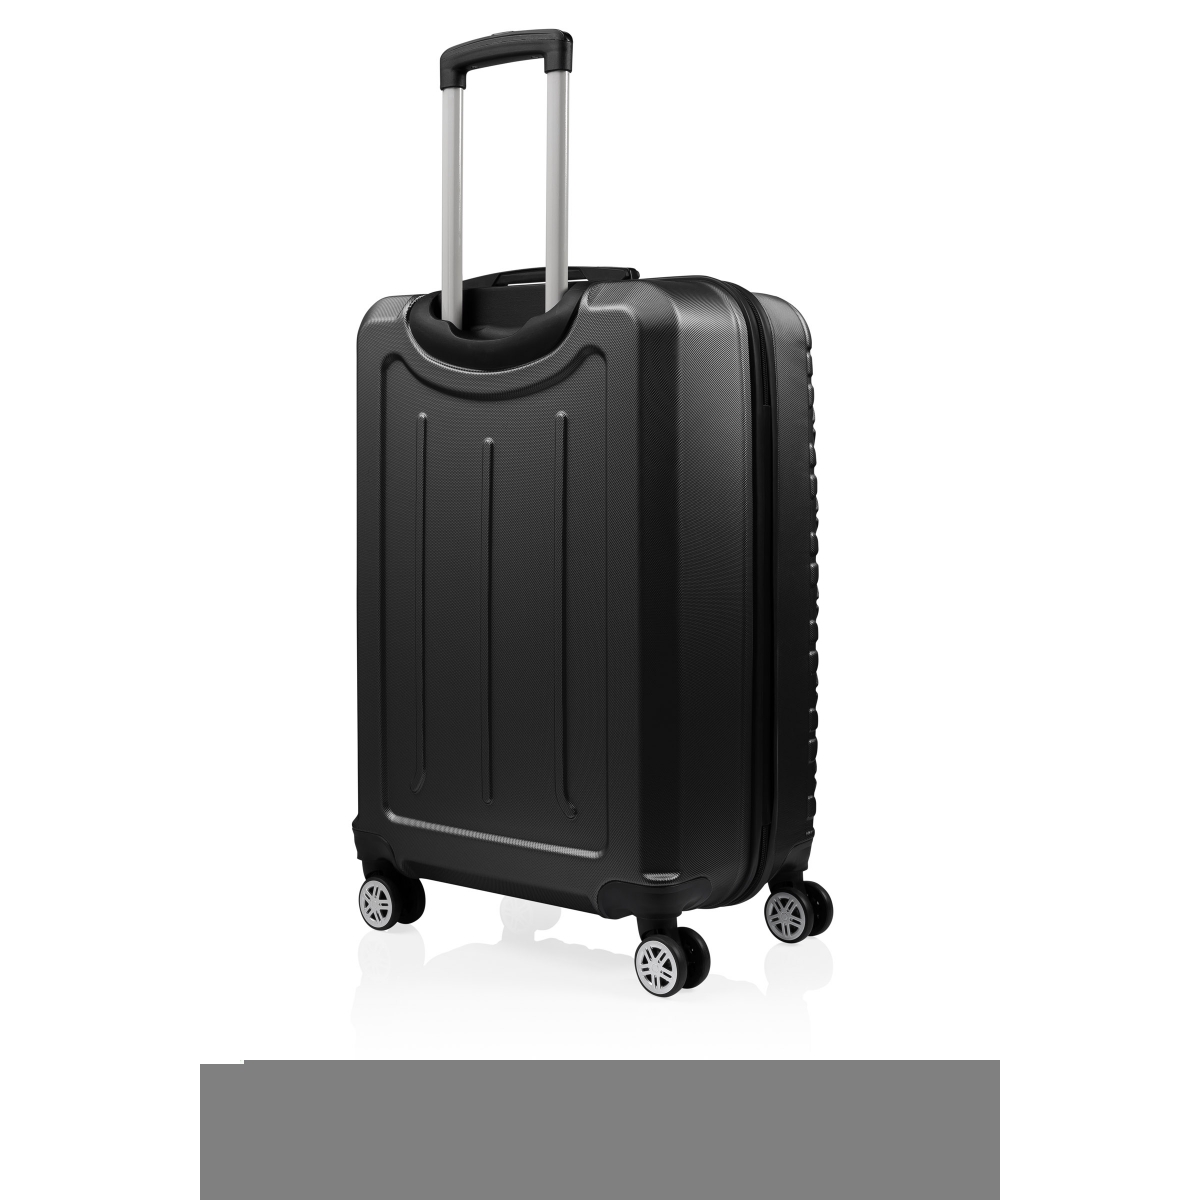 Gedox Abs 3'lü Valiz Seyahat Seti - Model:800.01 Siyah